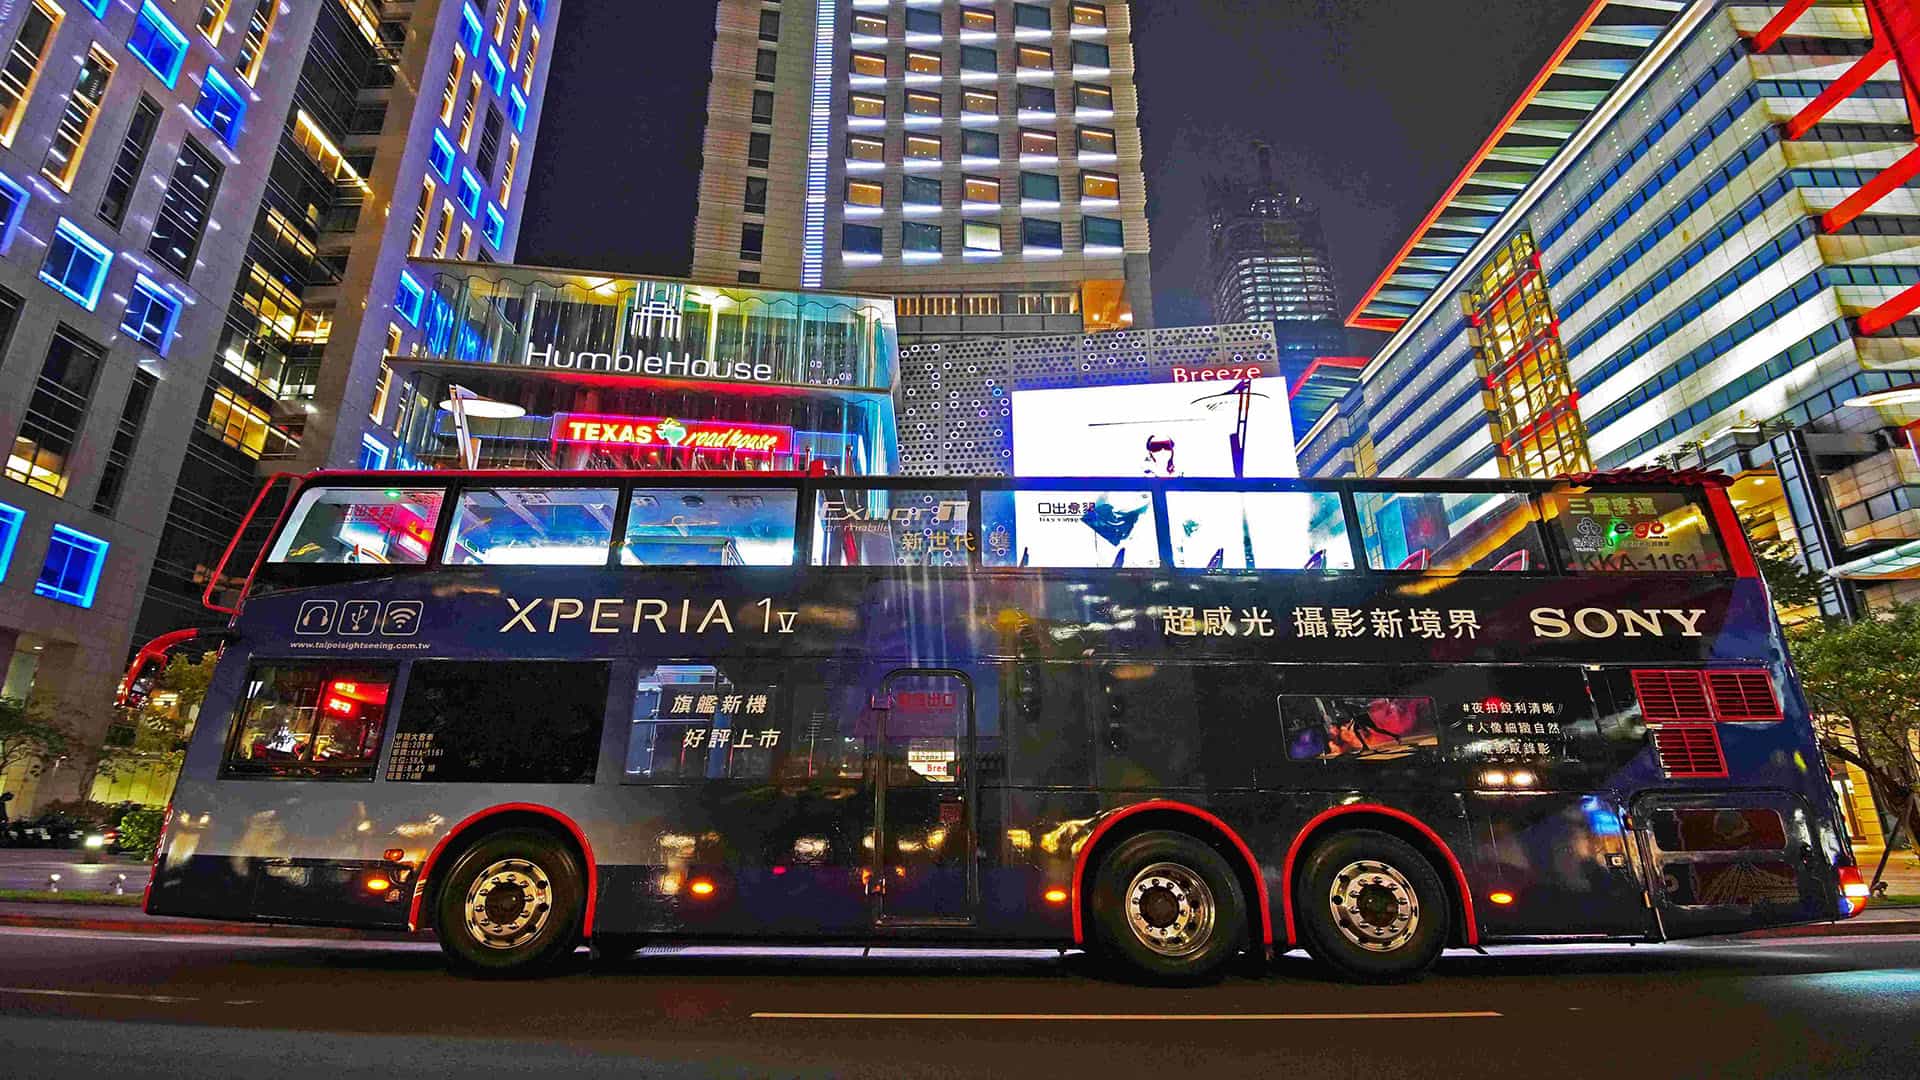 圖說二、歡慶xperia 1 V上市，sony打造期間限定「xperia 1 V超感光巴士」，活動期間於台北市區捕捉巴士身影分享社群有機會獲得sony大禮包！加碼「索粉專屬外拍體驗」，5月24日起開放報名！